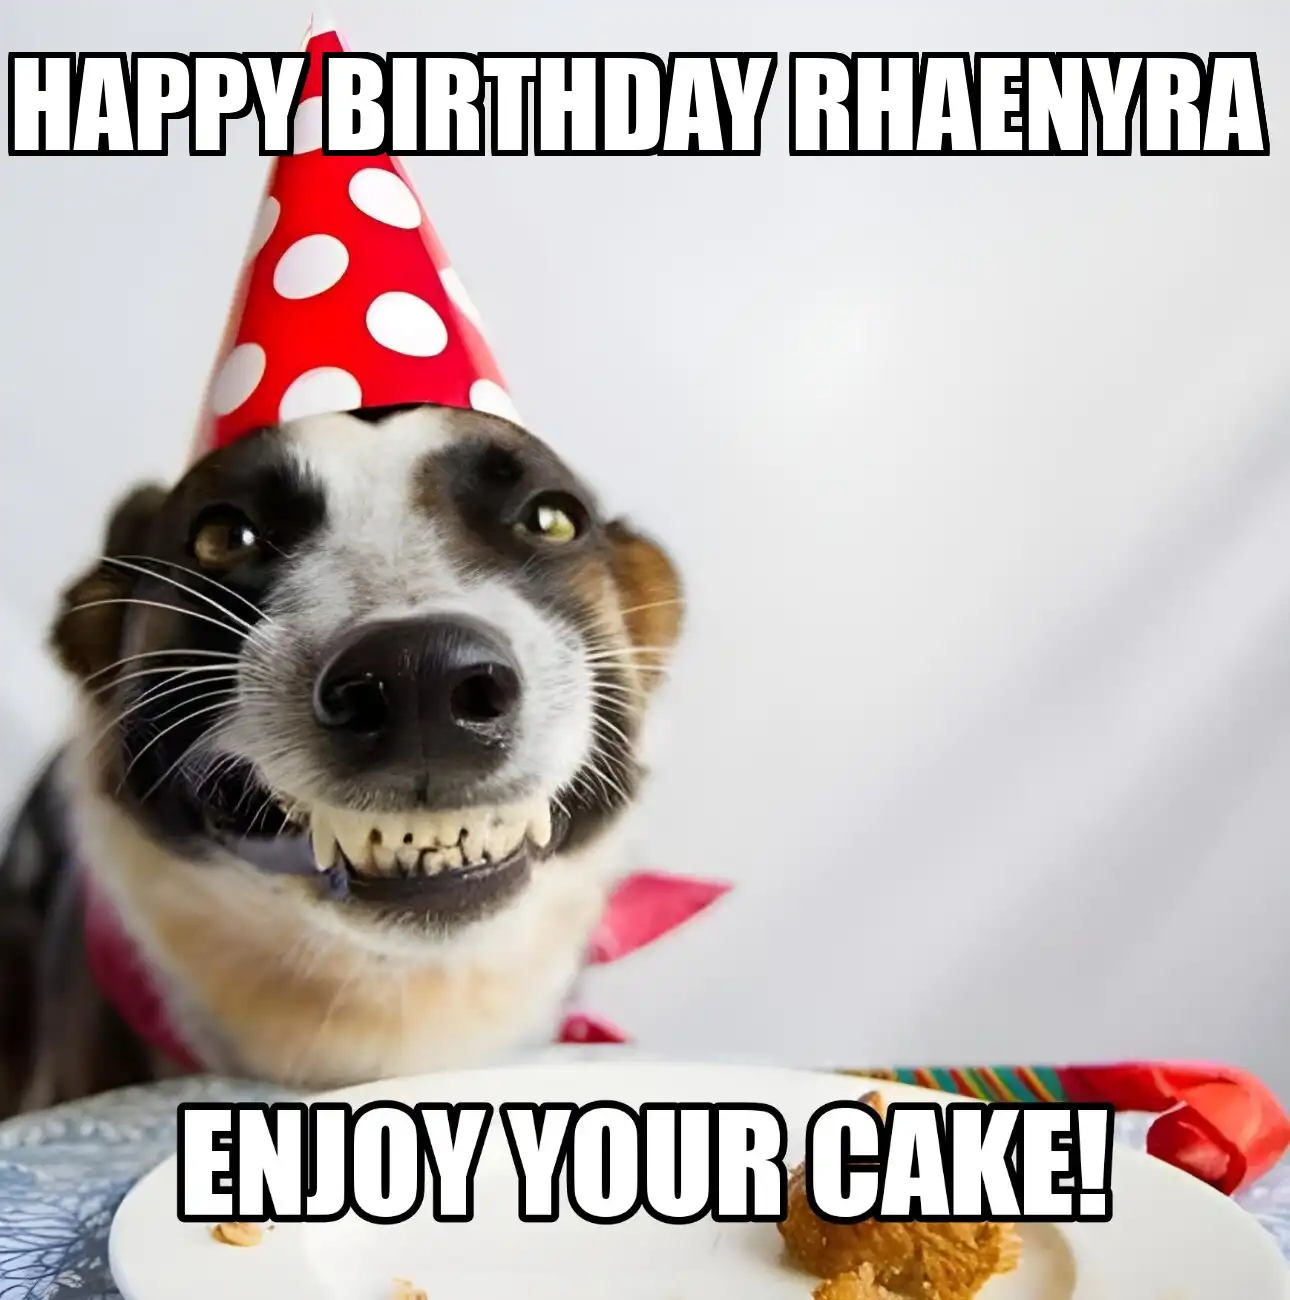 Happy Birthday Rhaenyra Enjoy Your Cake Dog Meme